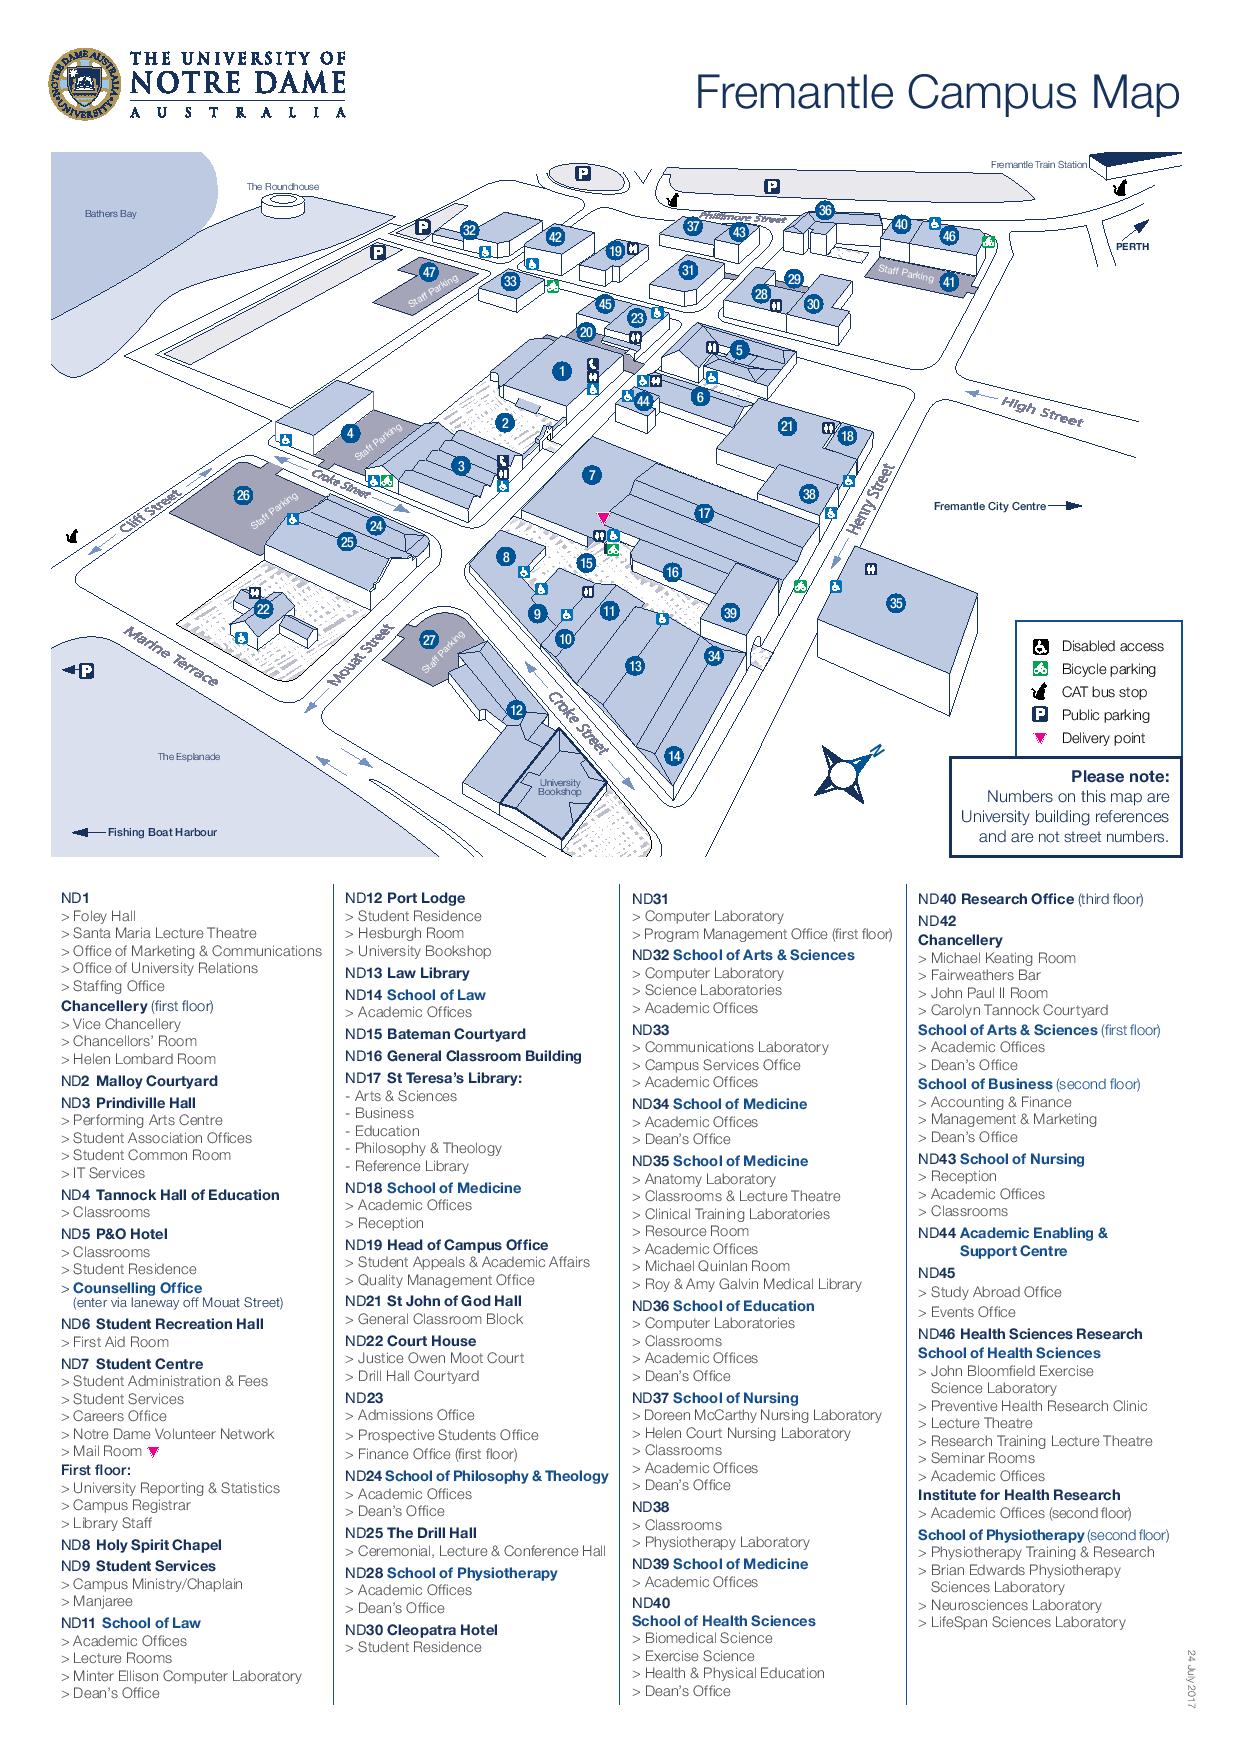 Notre Dame Fremantle Campus map